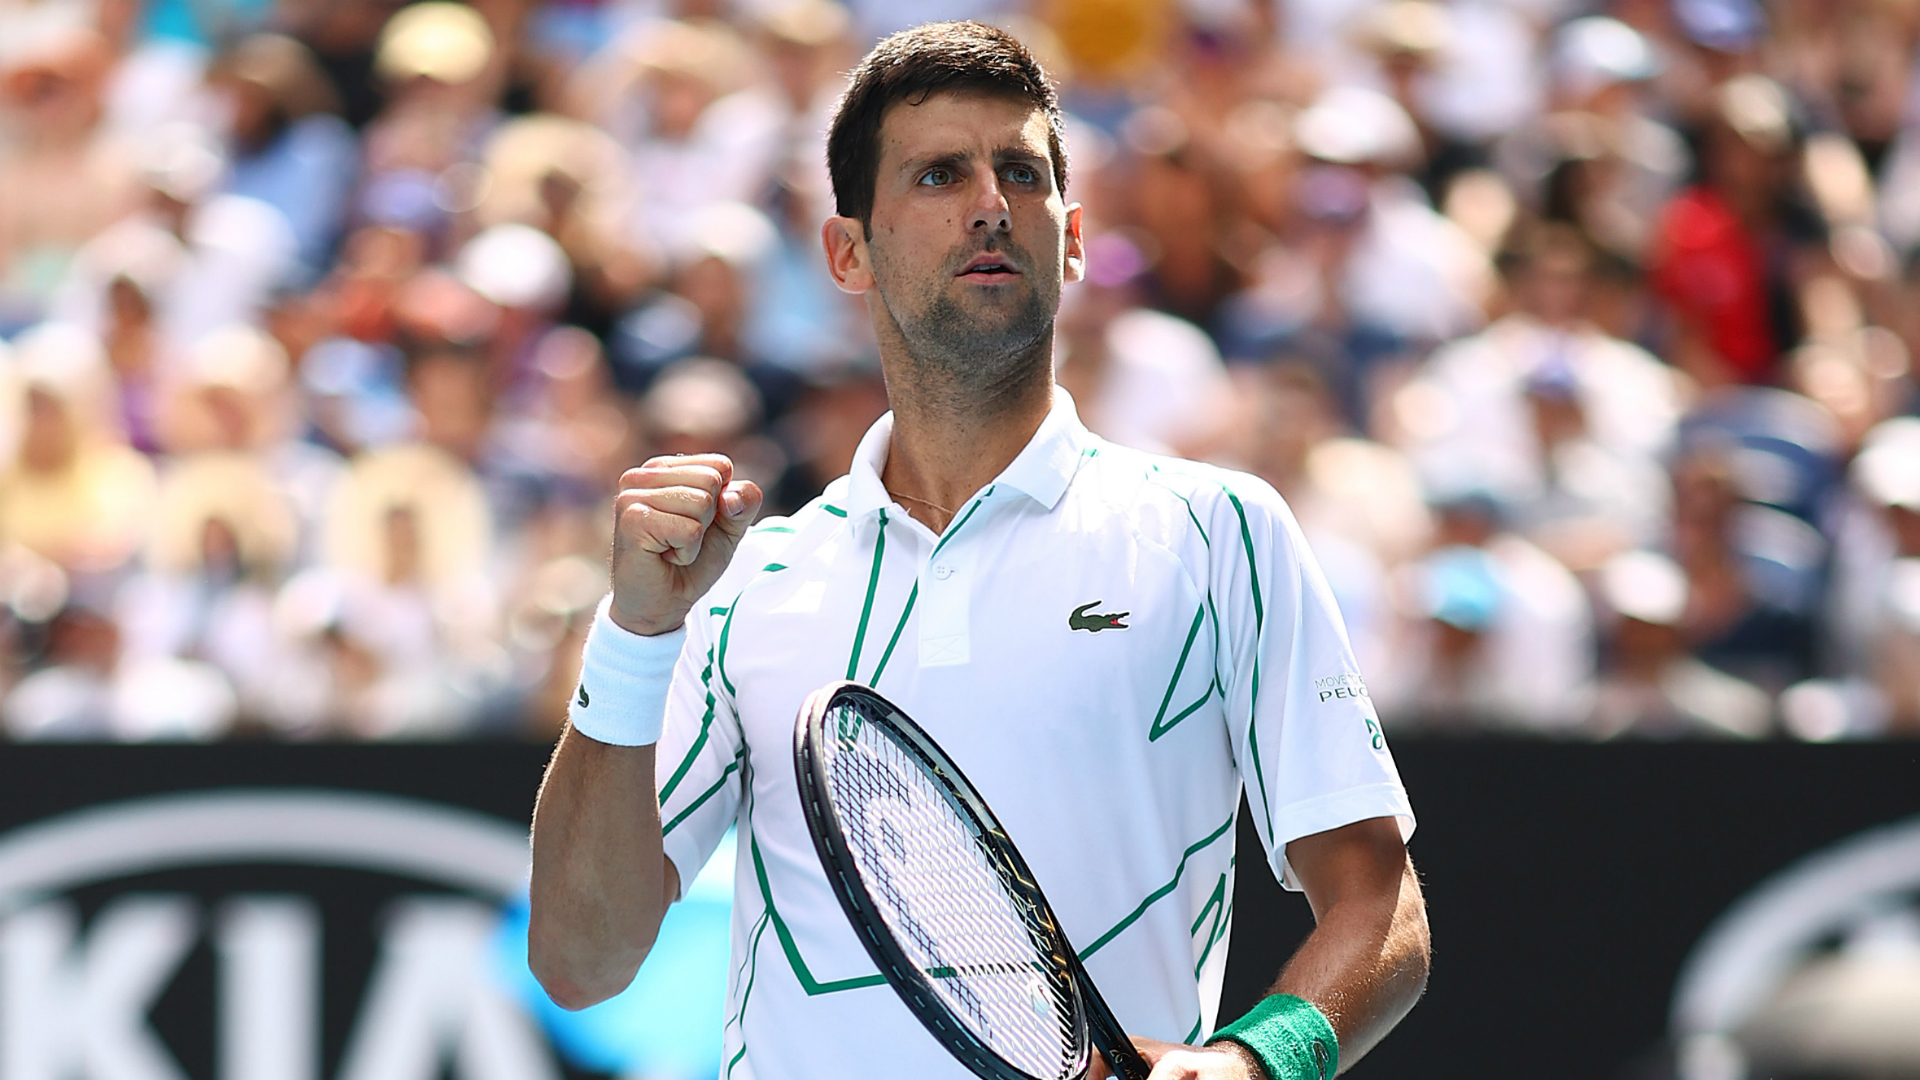 Australian Open 2020 Dominant Djokovic powers through to quarter